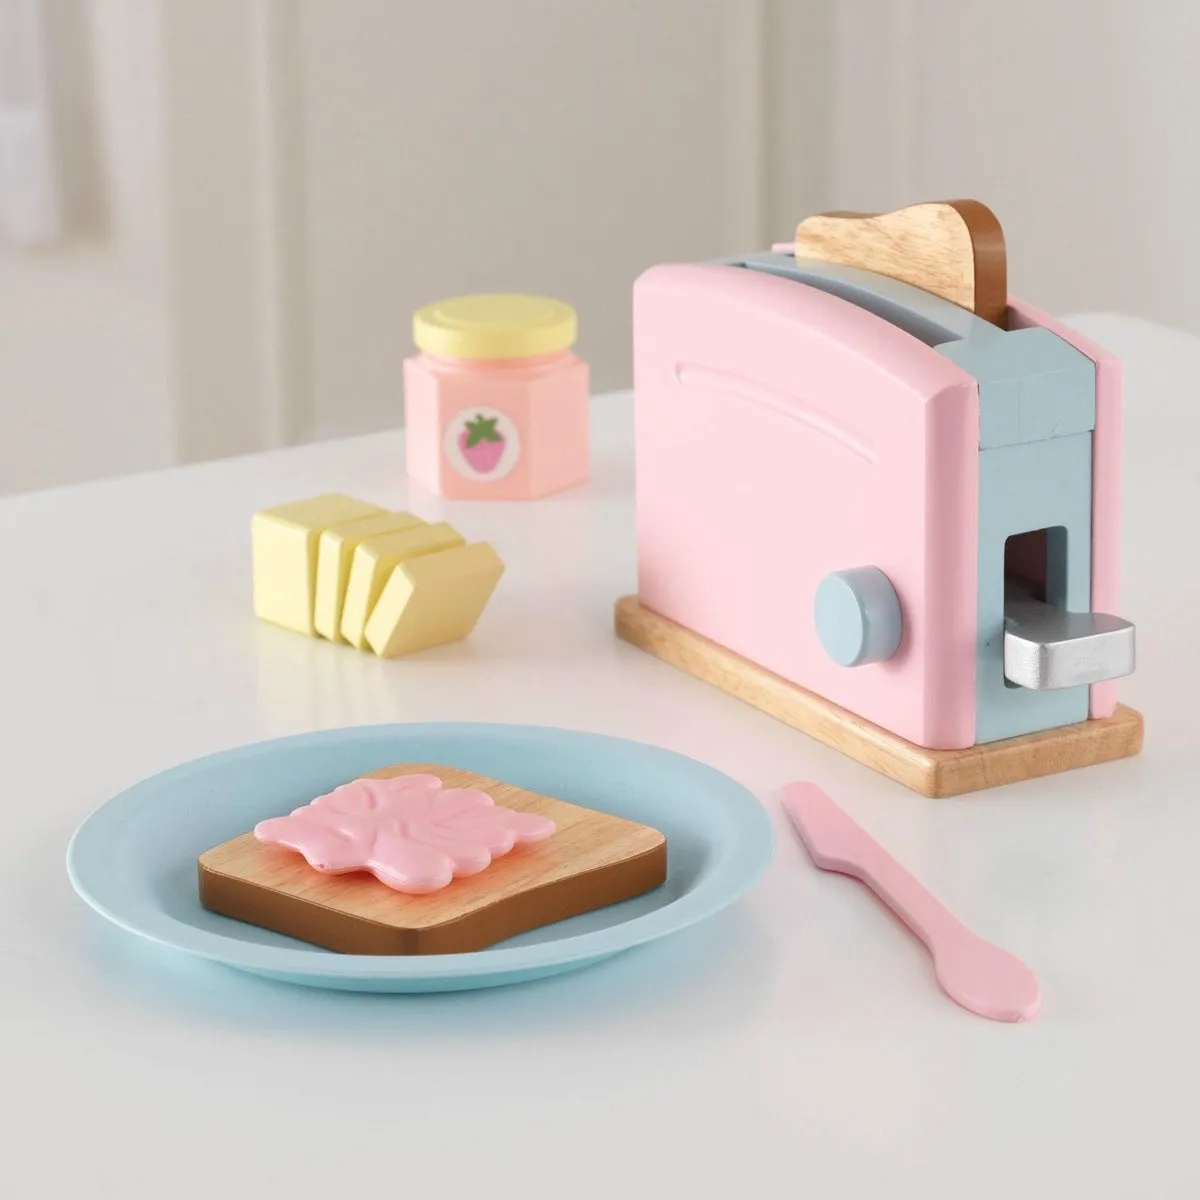 KidKraft Houten Speelgoed Broodrooster Toaster 8-delig Pastel Kleurig speelgoed